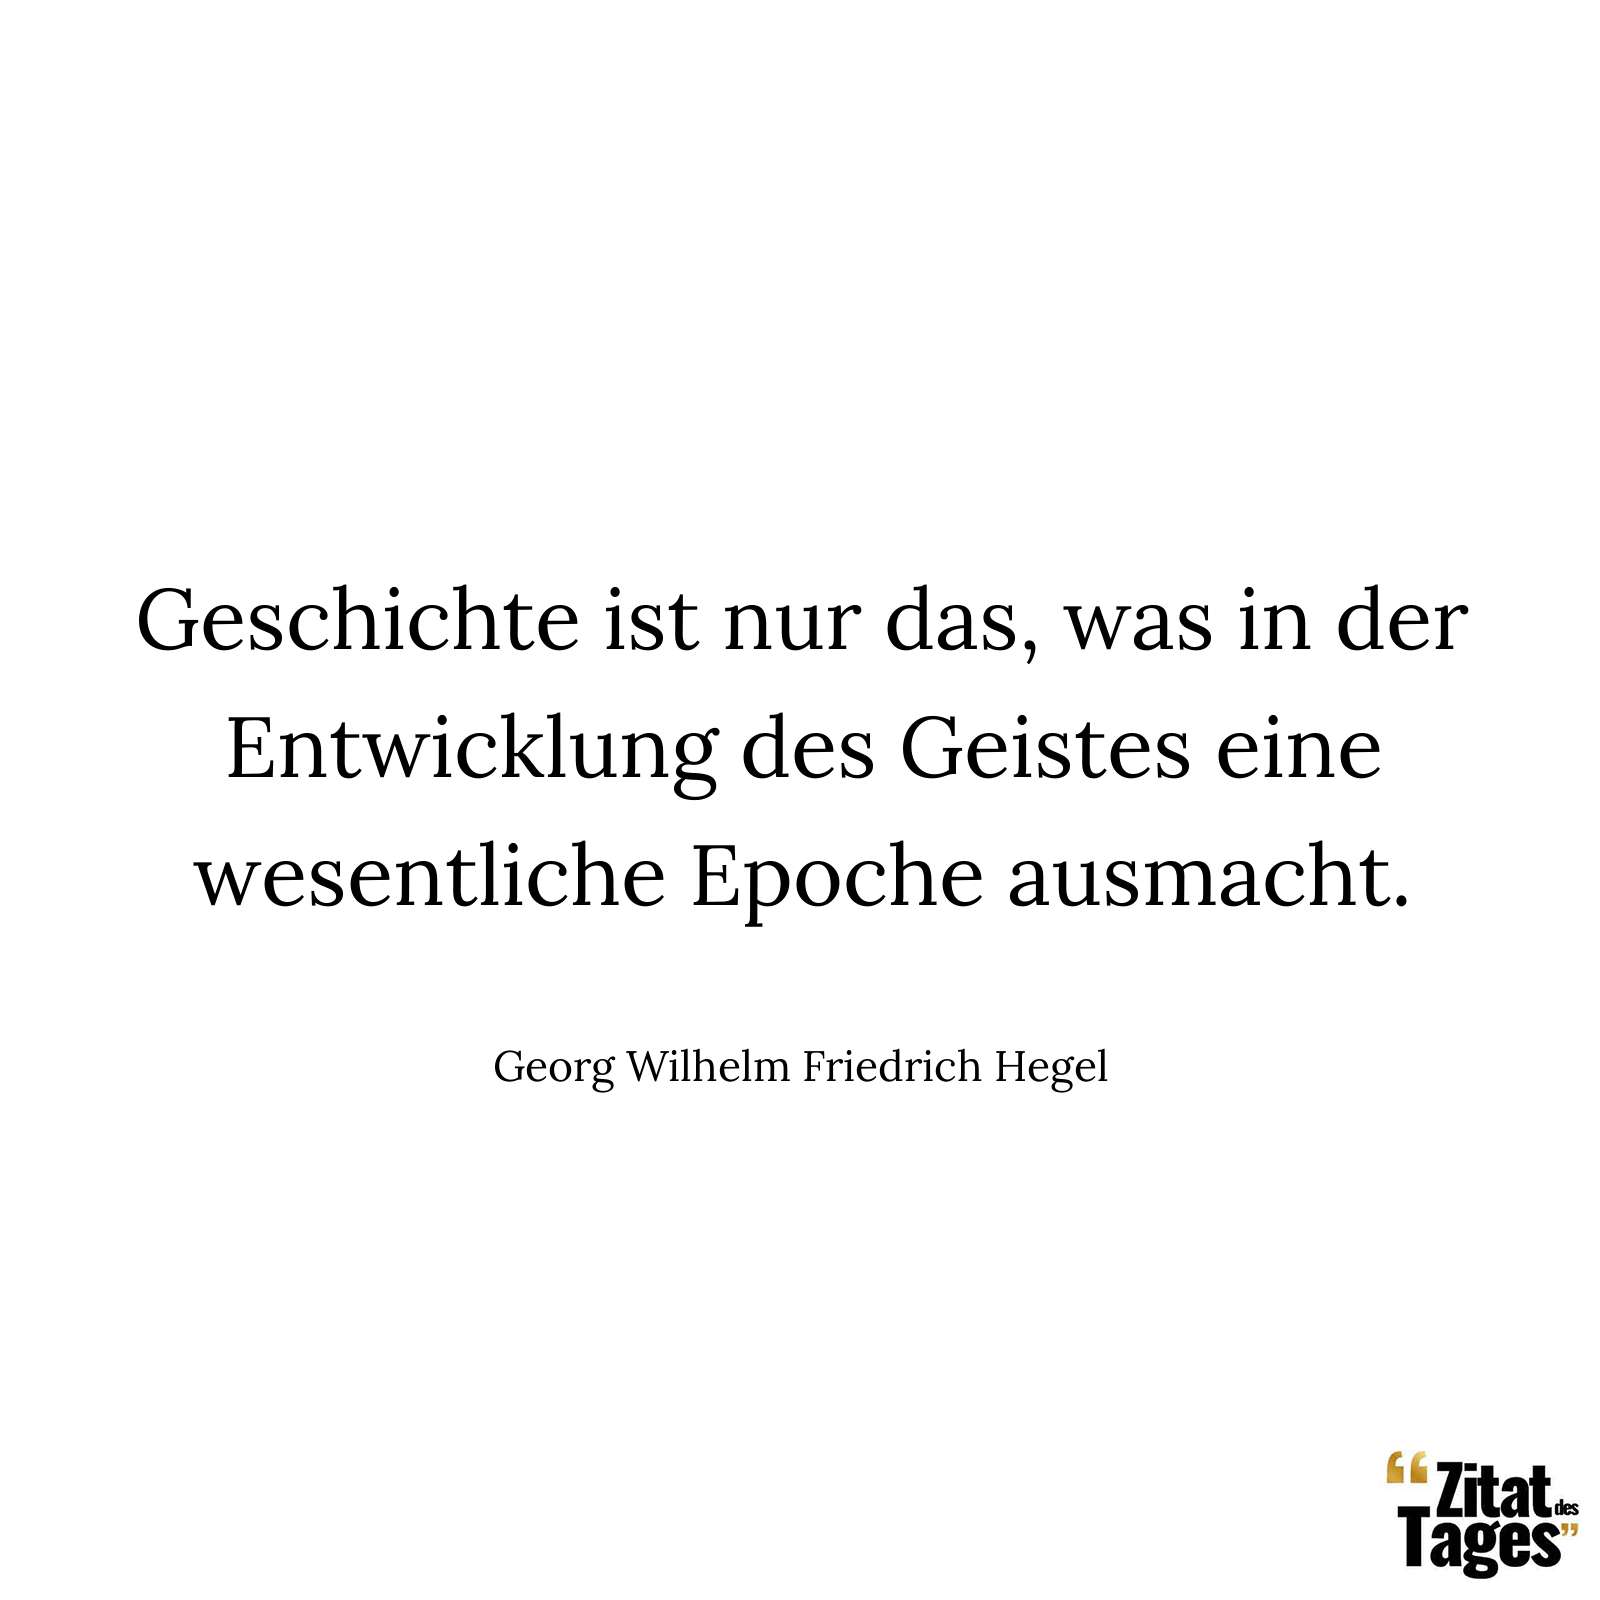 Geschichte ist nur das, was in der Entwicklung des Geistes eine wesentliche Epoche ausmacht. - Georg Wilhelm Friedrich Hegel